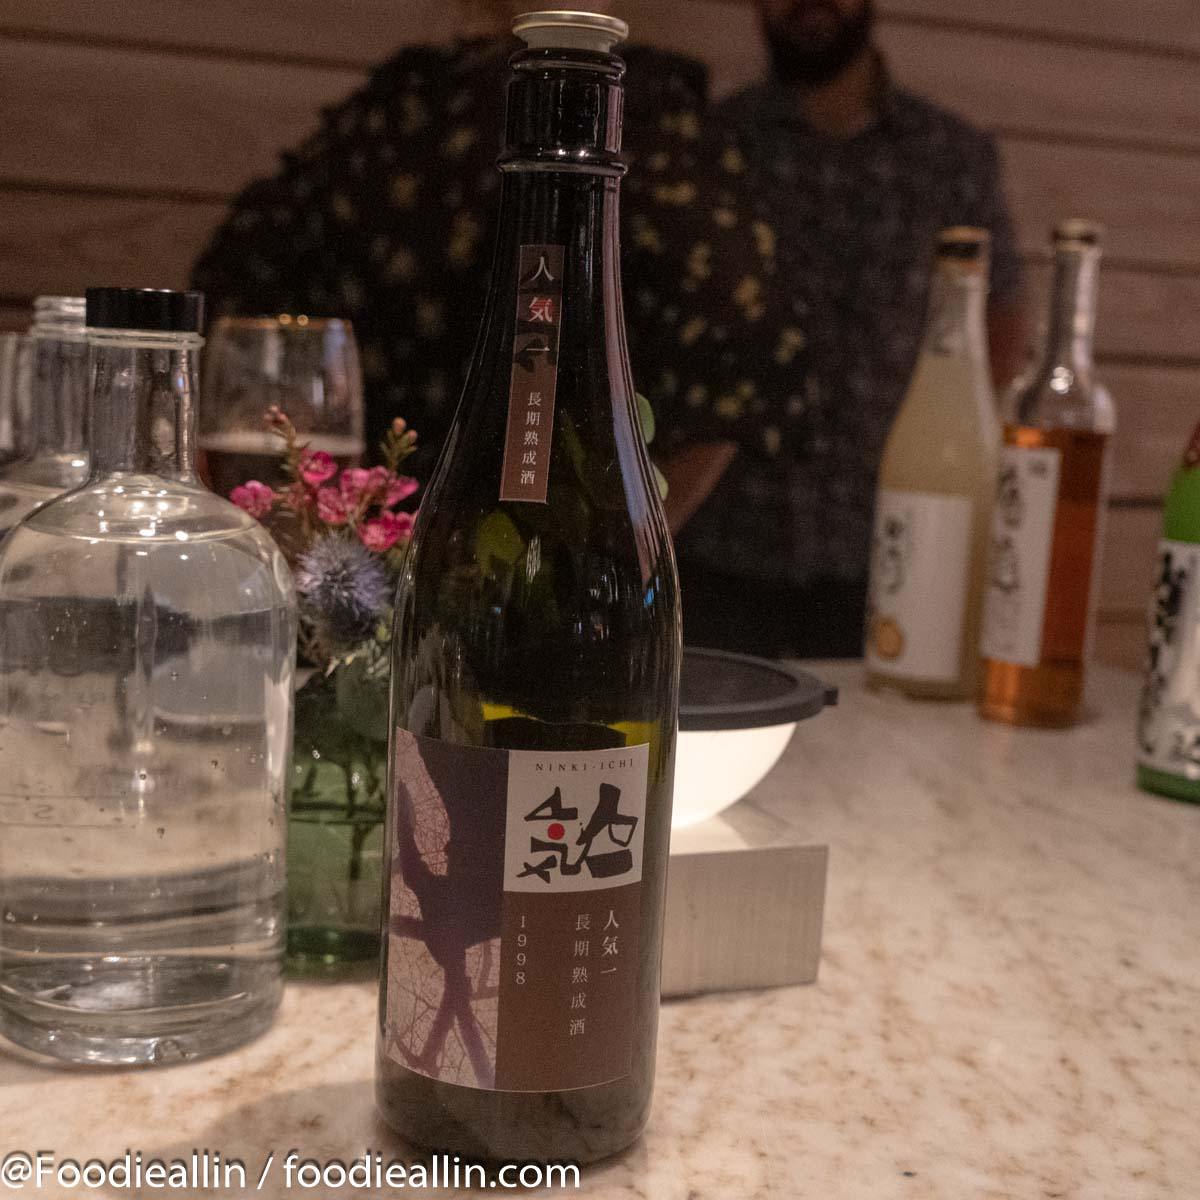 Aged Sake 1998 – Choki jukusei-sake